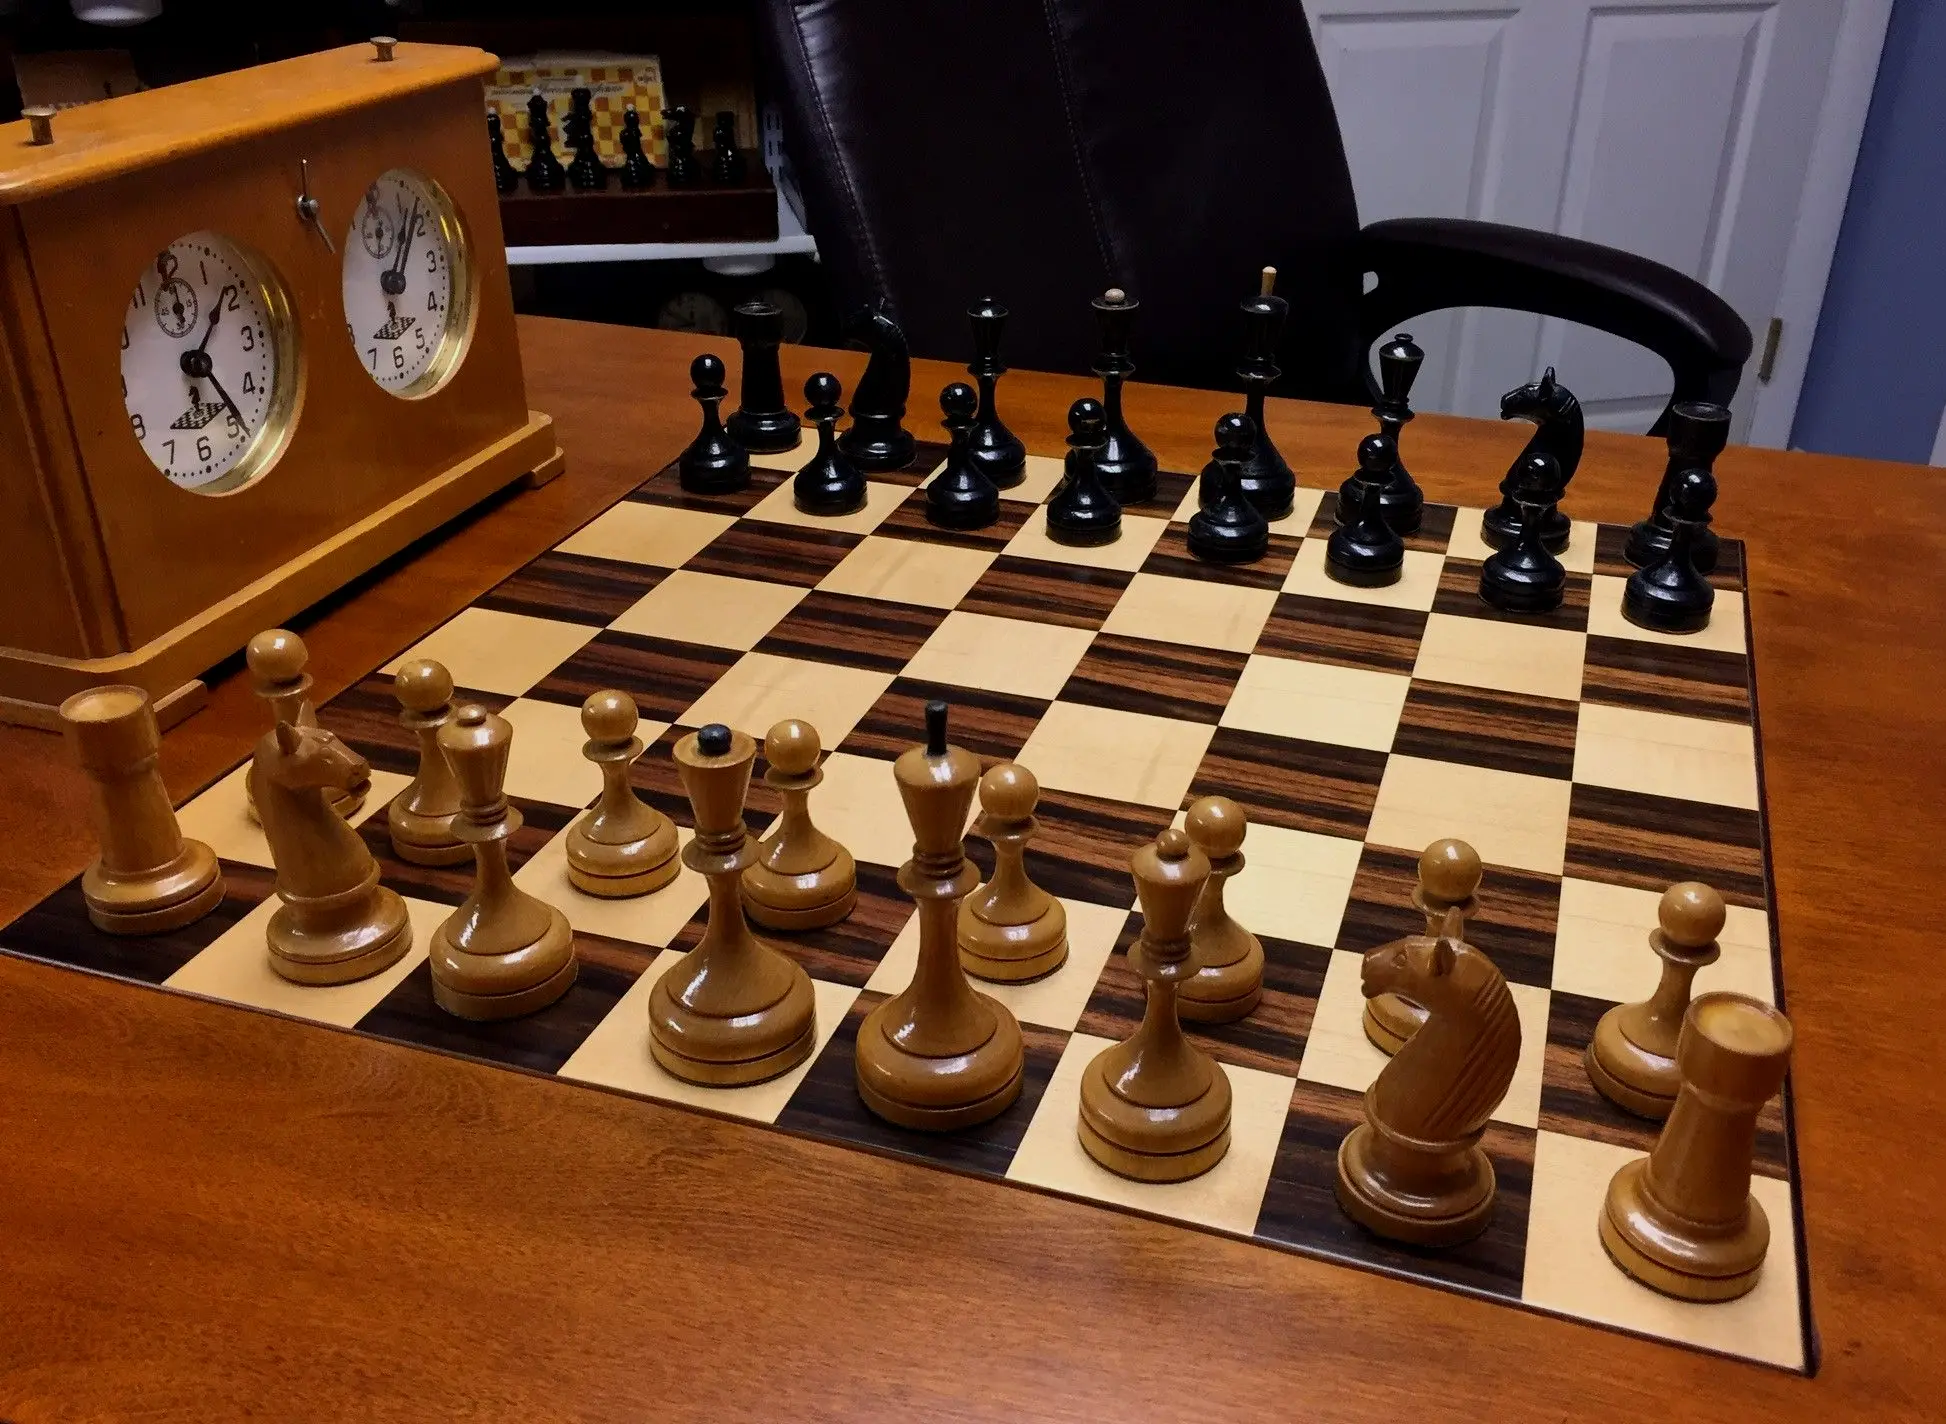 苏联棋子经典棋子Ботвинник-Флор II （Botvinnik-Flohr II）， 塔尔爱用的棋。名字来自鲍特威尼克和弗洛西的苏联冠军赛。以此两人命名的有两套，1933年套称为 I ，1935年套称为 II。33年套更接近西方设计。